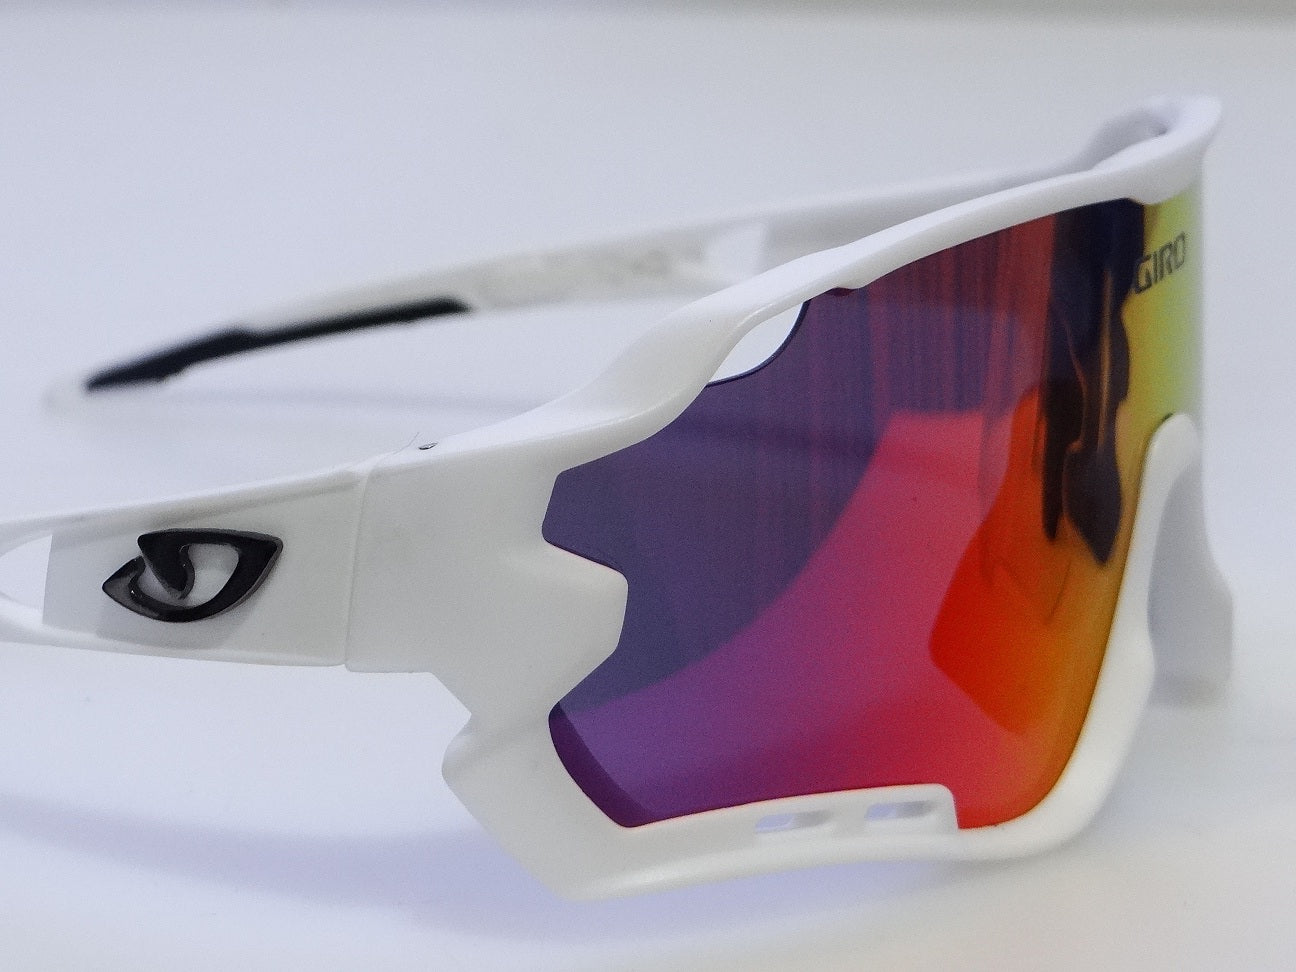 oculos-locs-brasil-giro-kit-ciclismo-audax-preto-fosco-5-lentes-grau